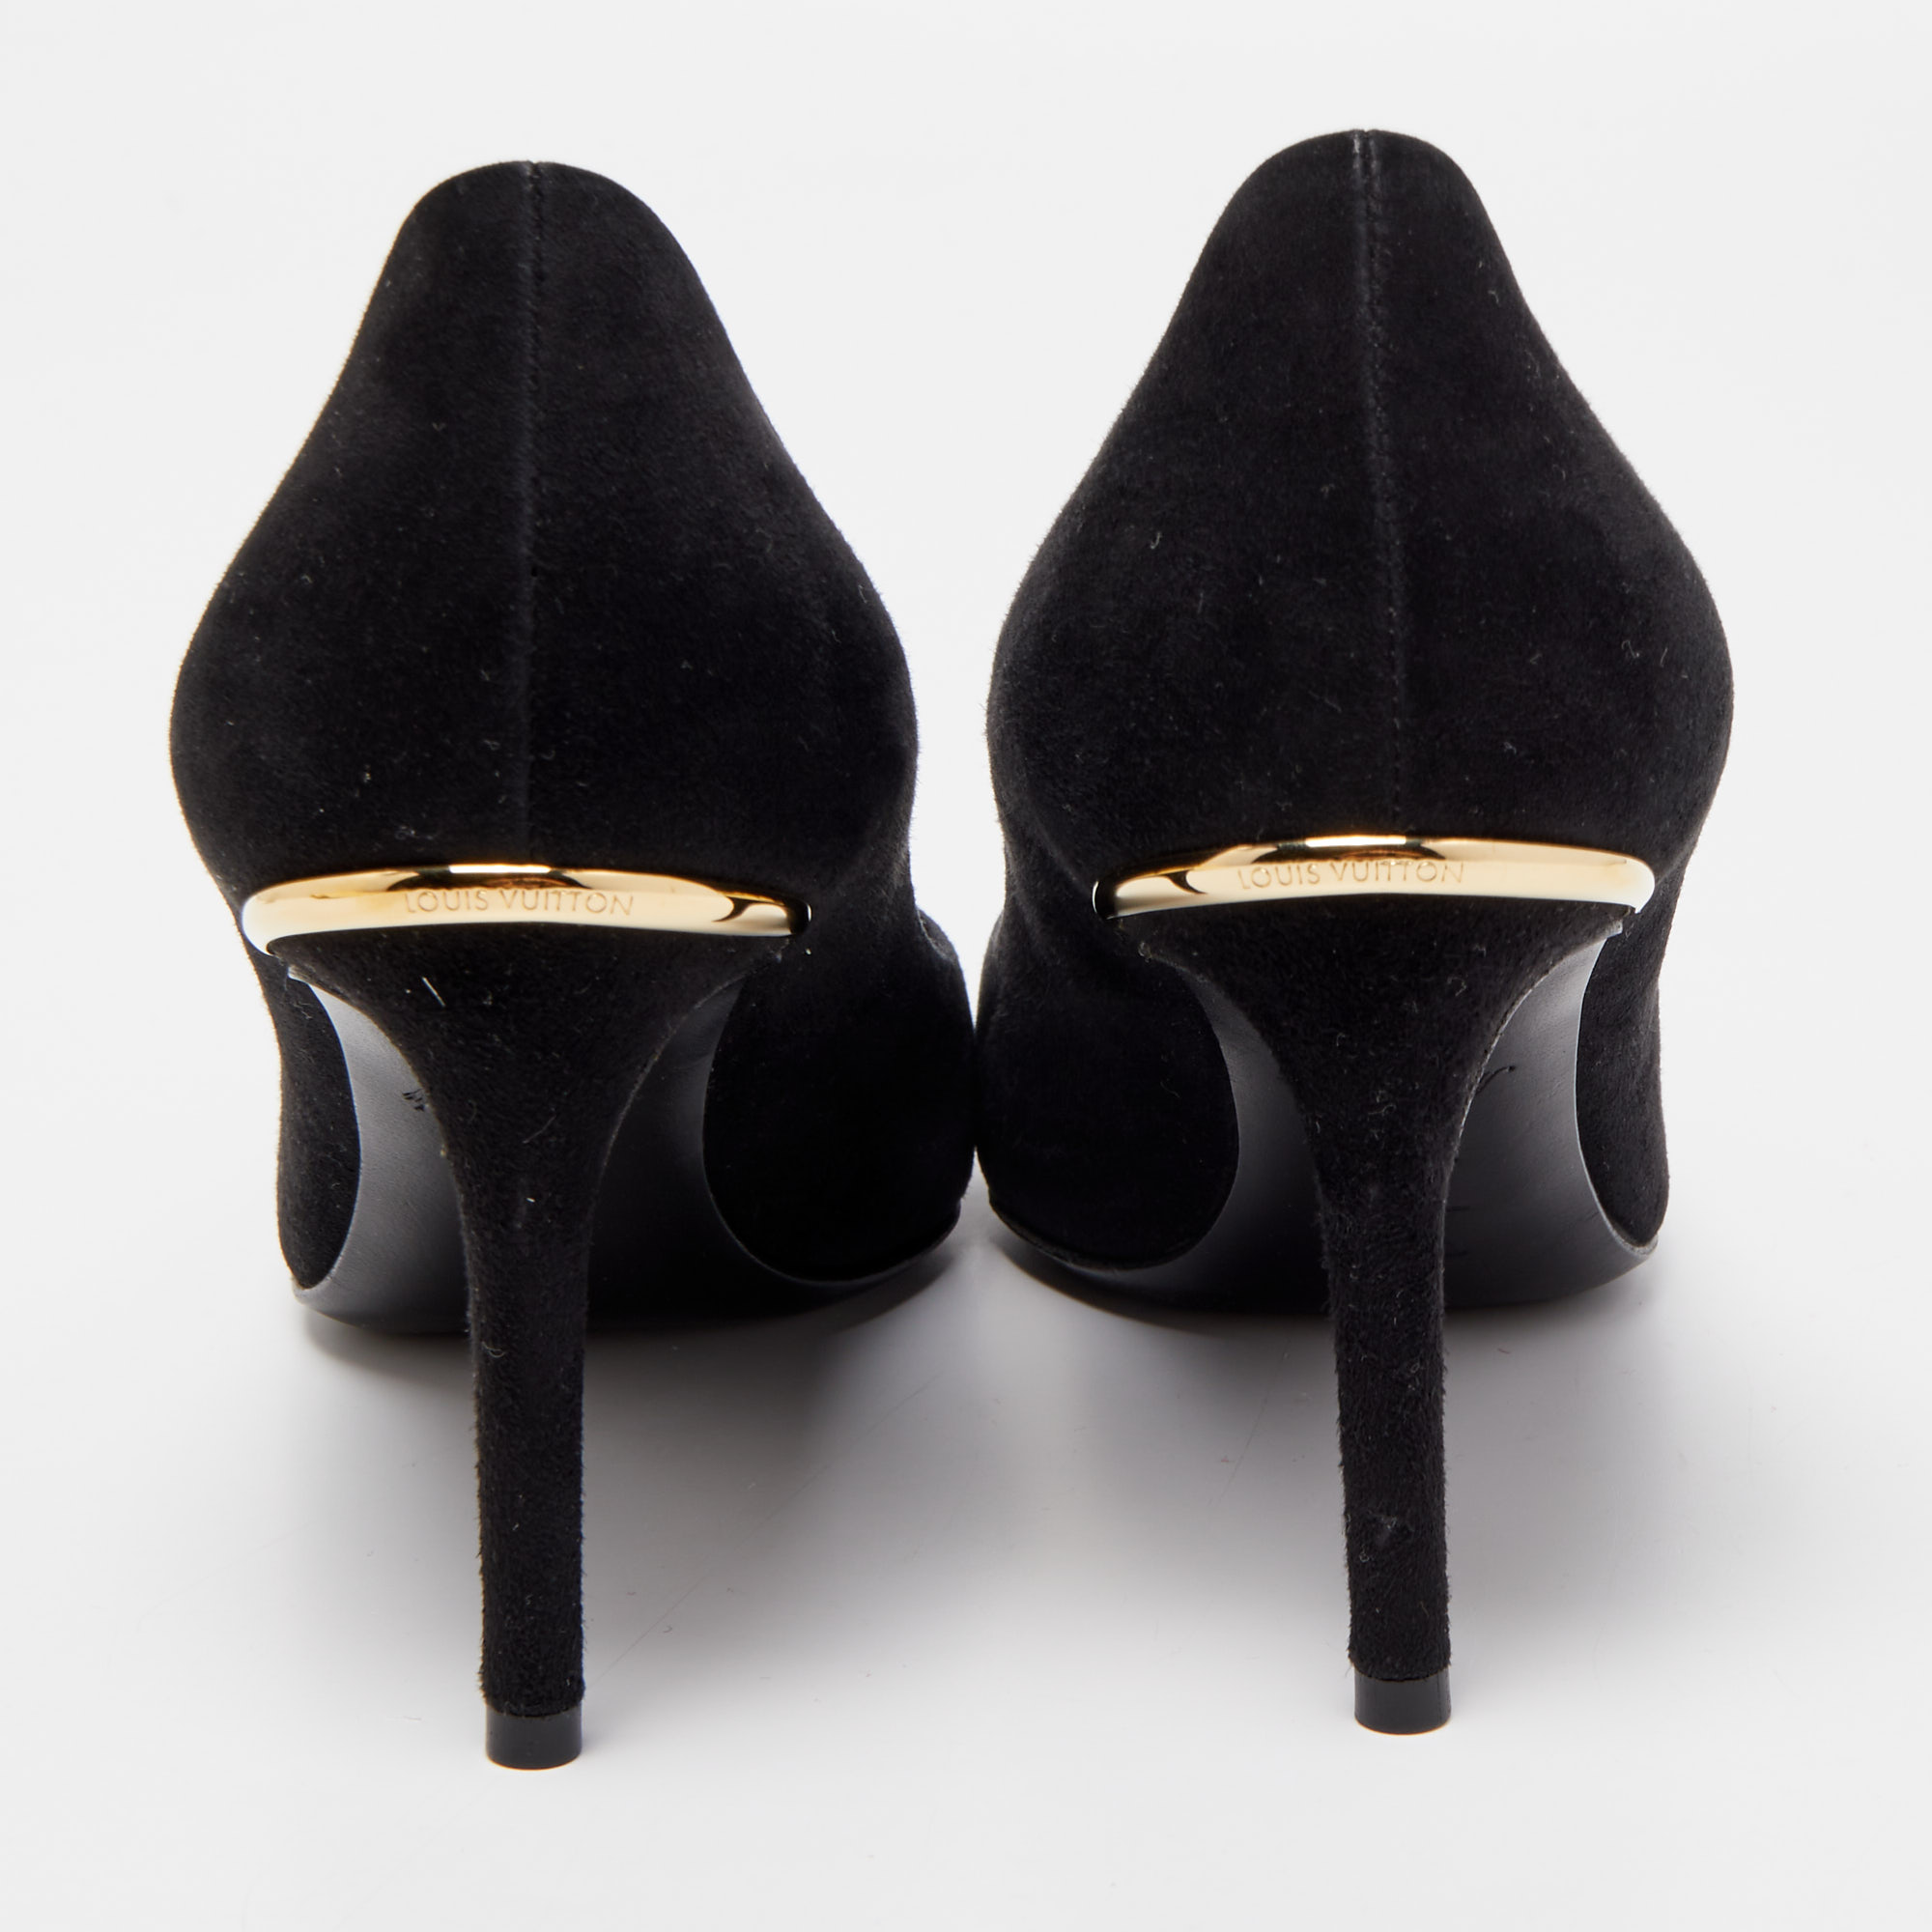 Louis Vuitton Black Suede Pointed Toe Pumps Size 36.5